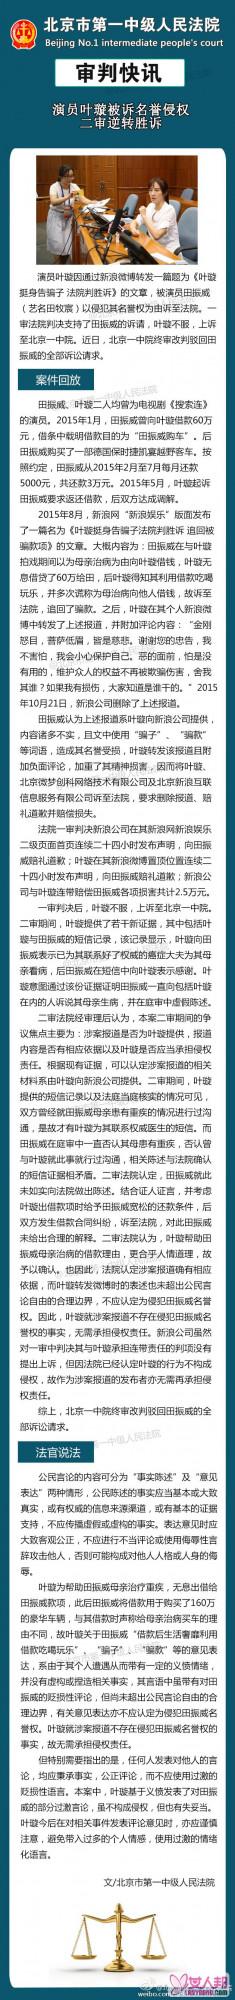 叶璇向剧组演员借款反被诉名誉侵权 二审逆转胜诉